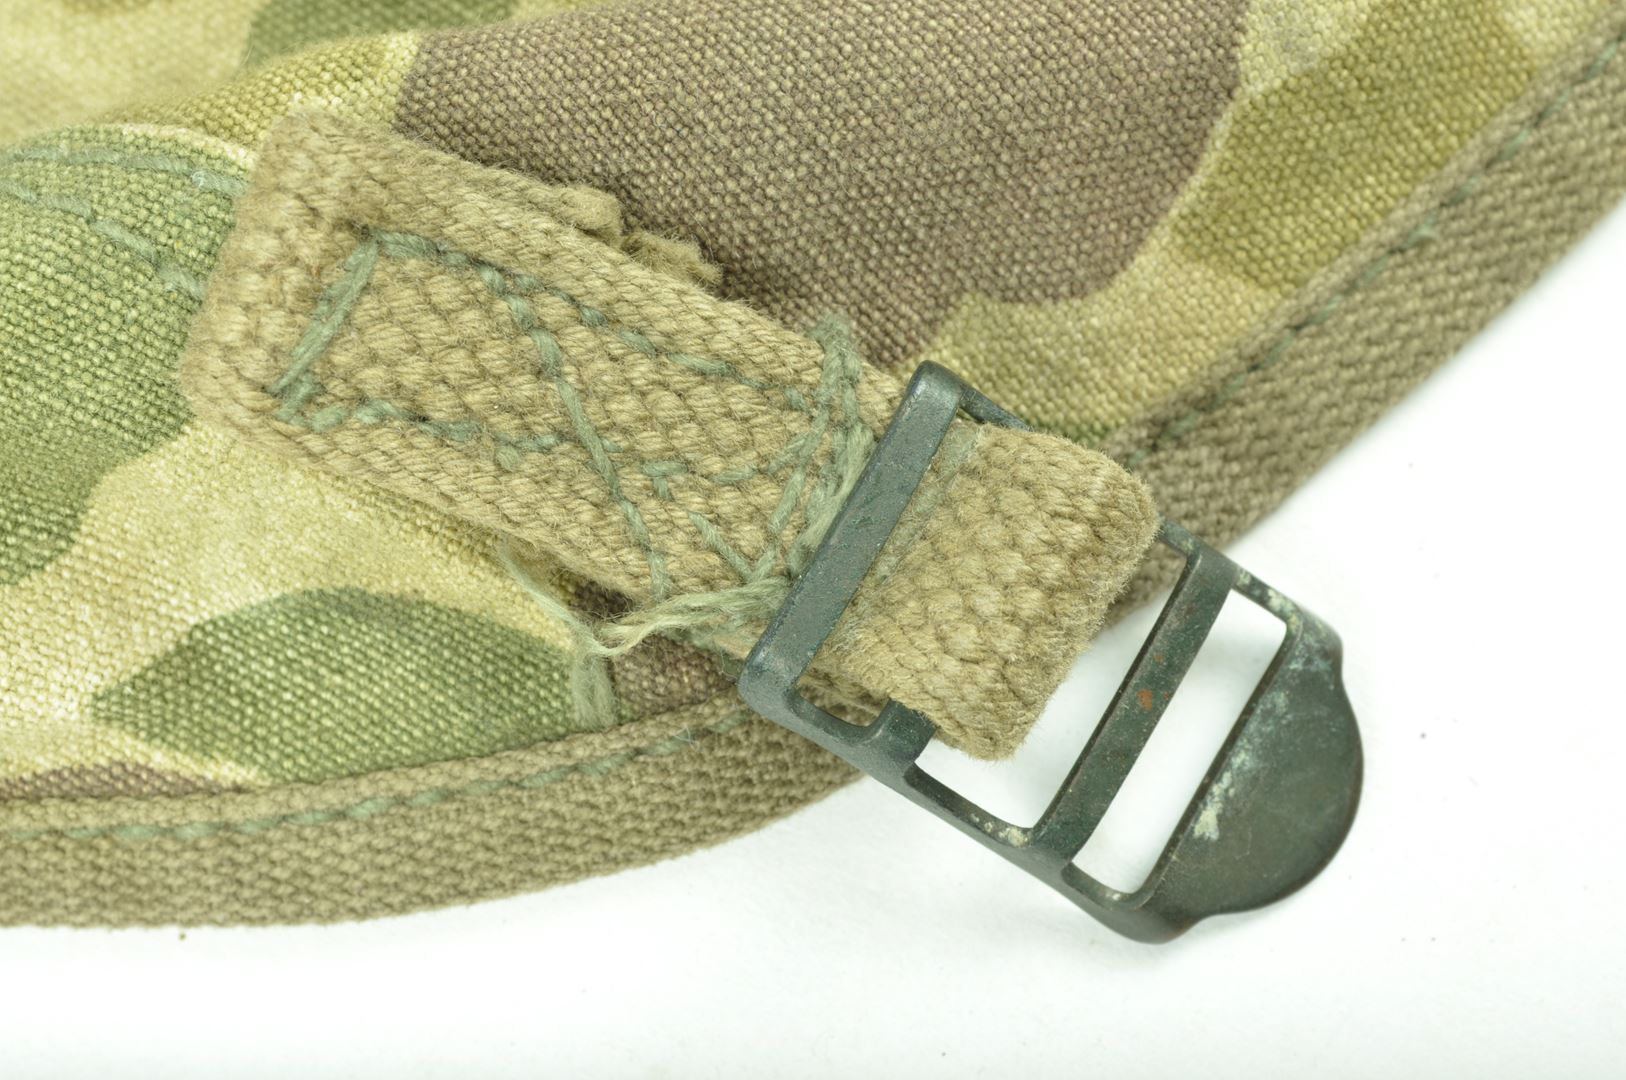 Sac à dos US Army camouflé précoce / daté 1942